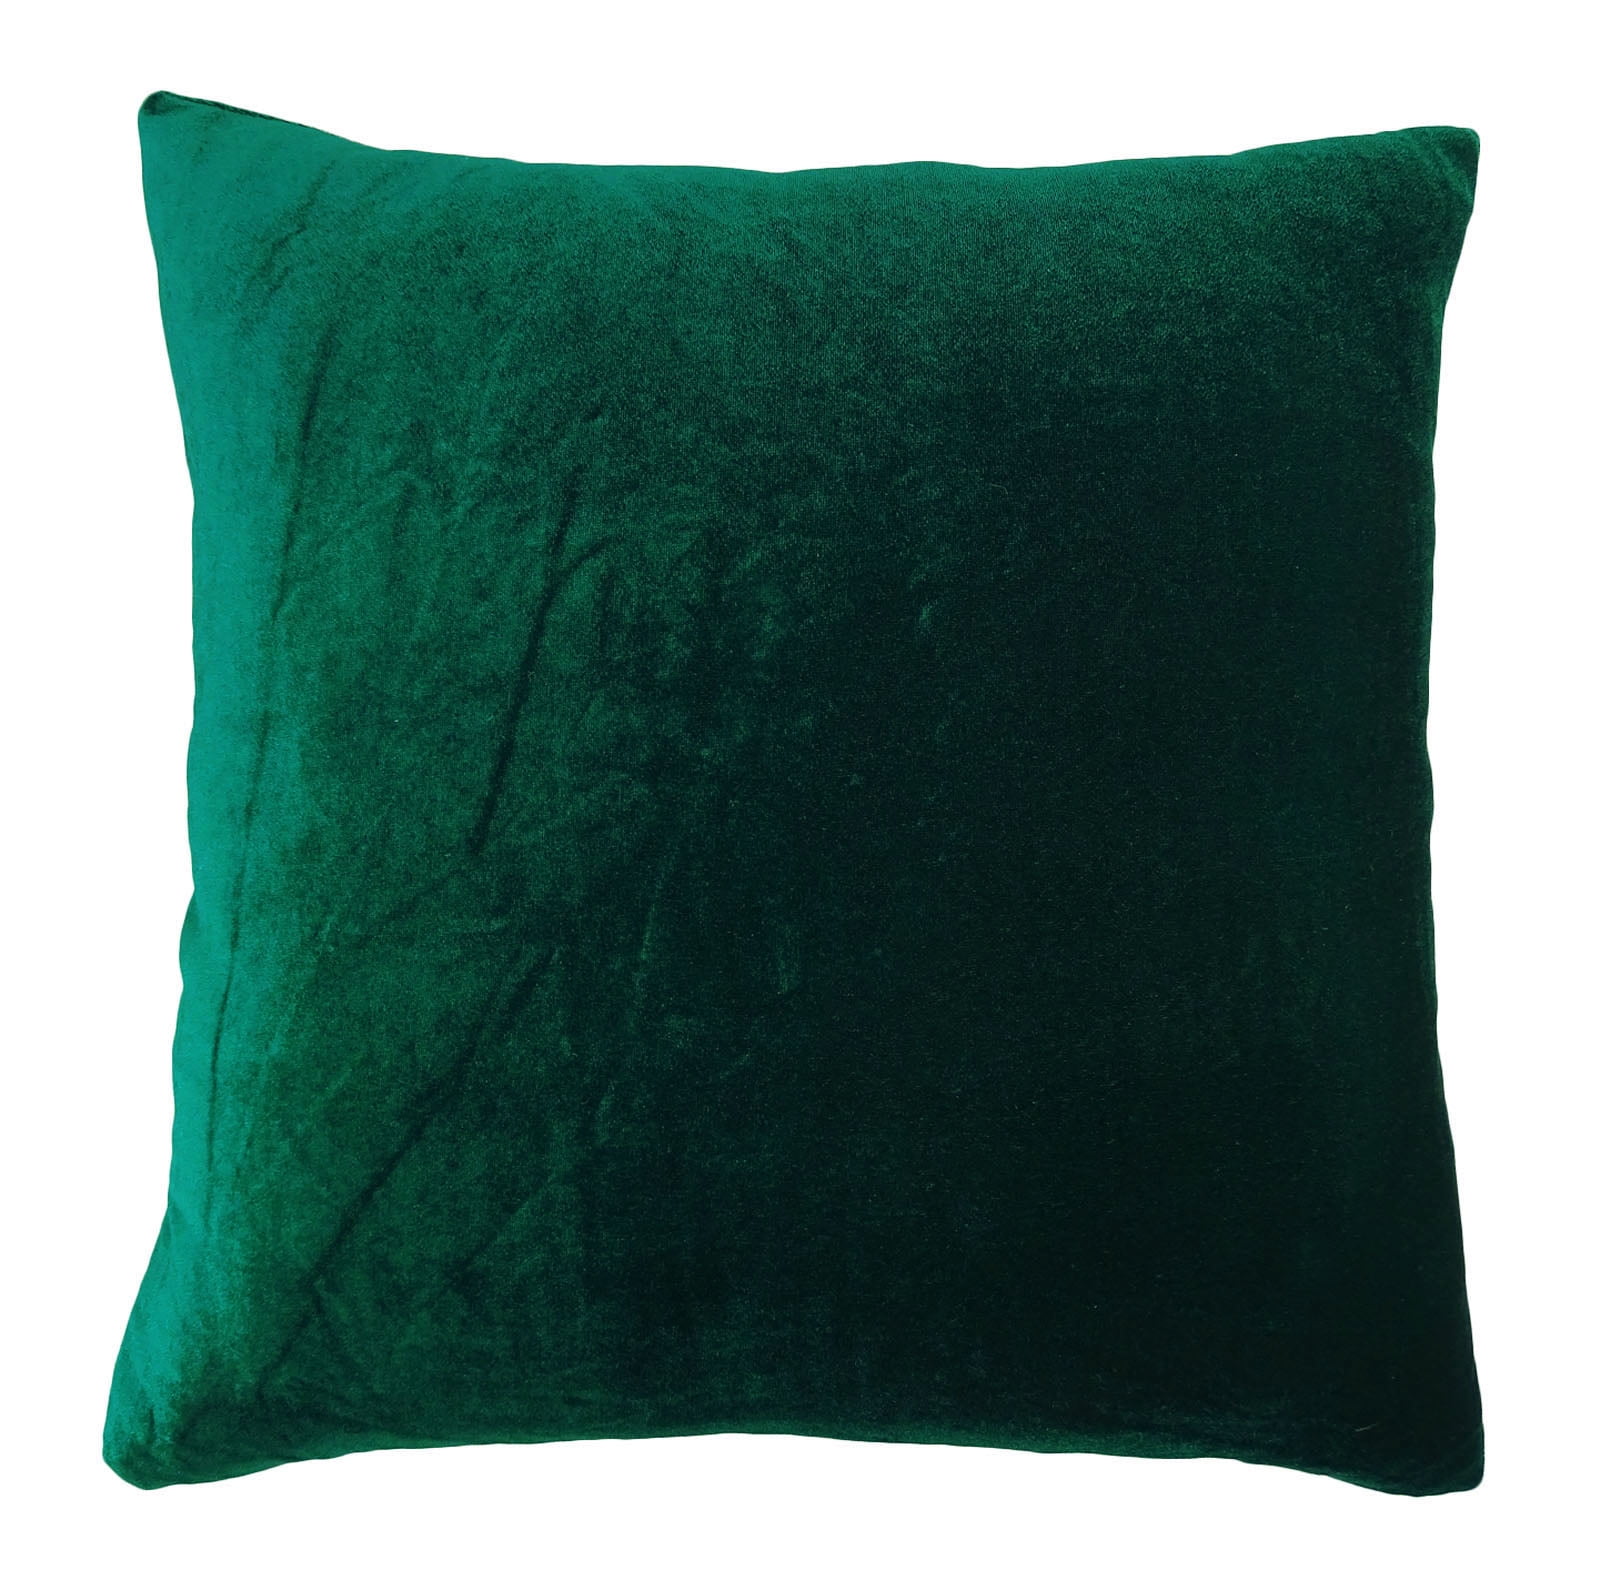 Home Decor Pillow Sham Dupion Silk Solid Throw Cushion Cover Case Choose Siz 